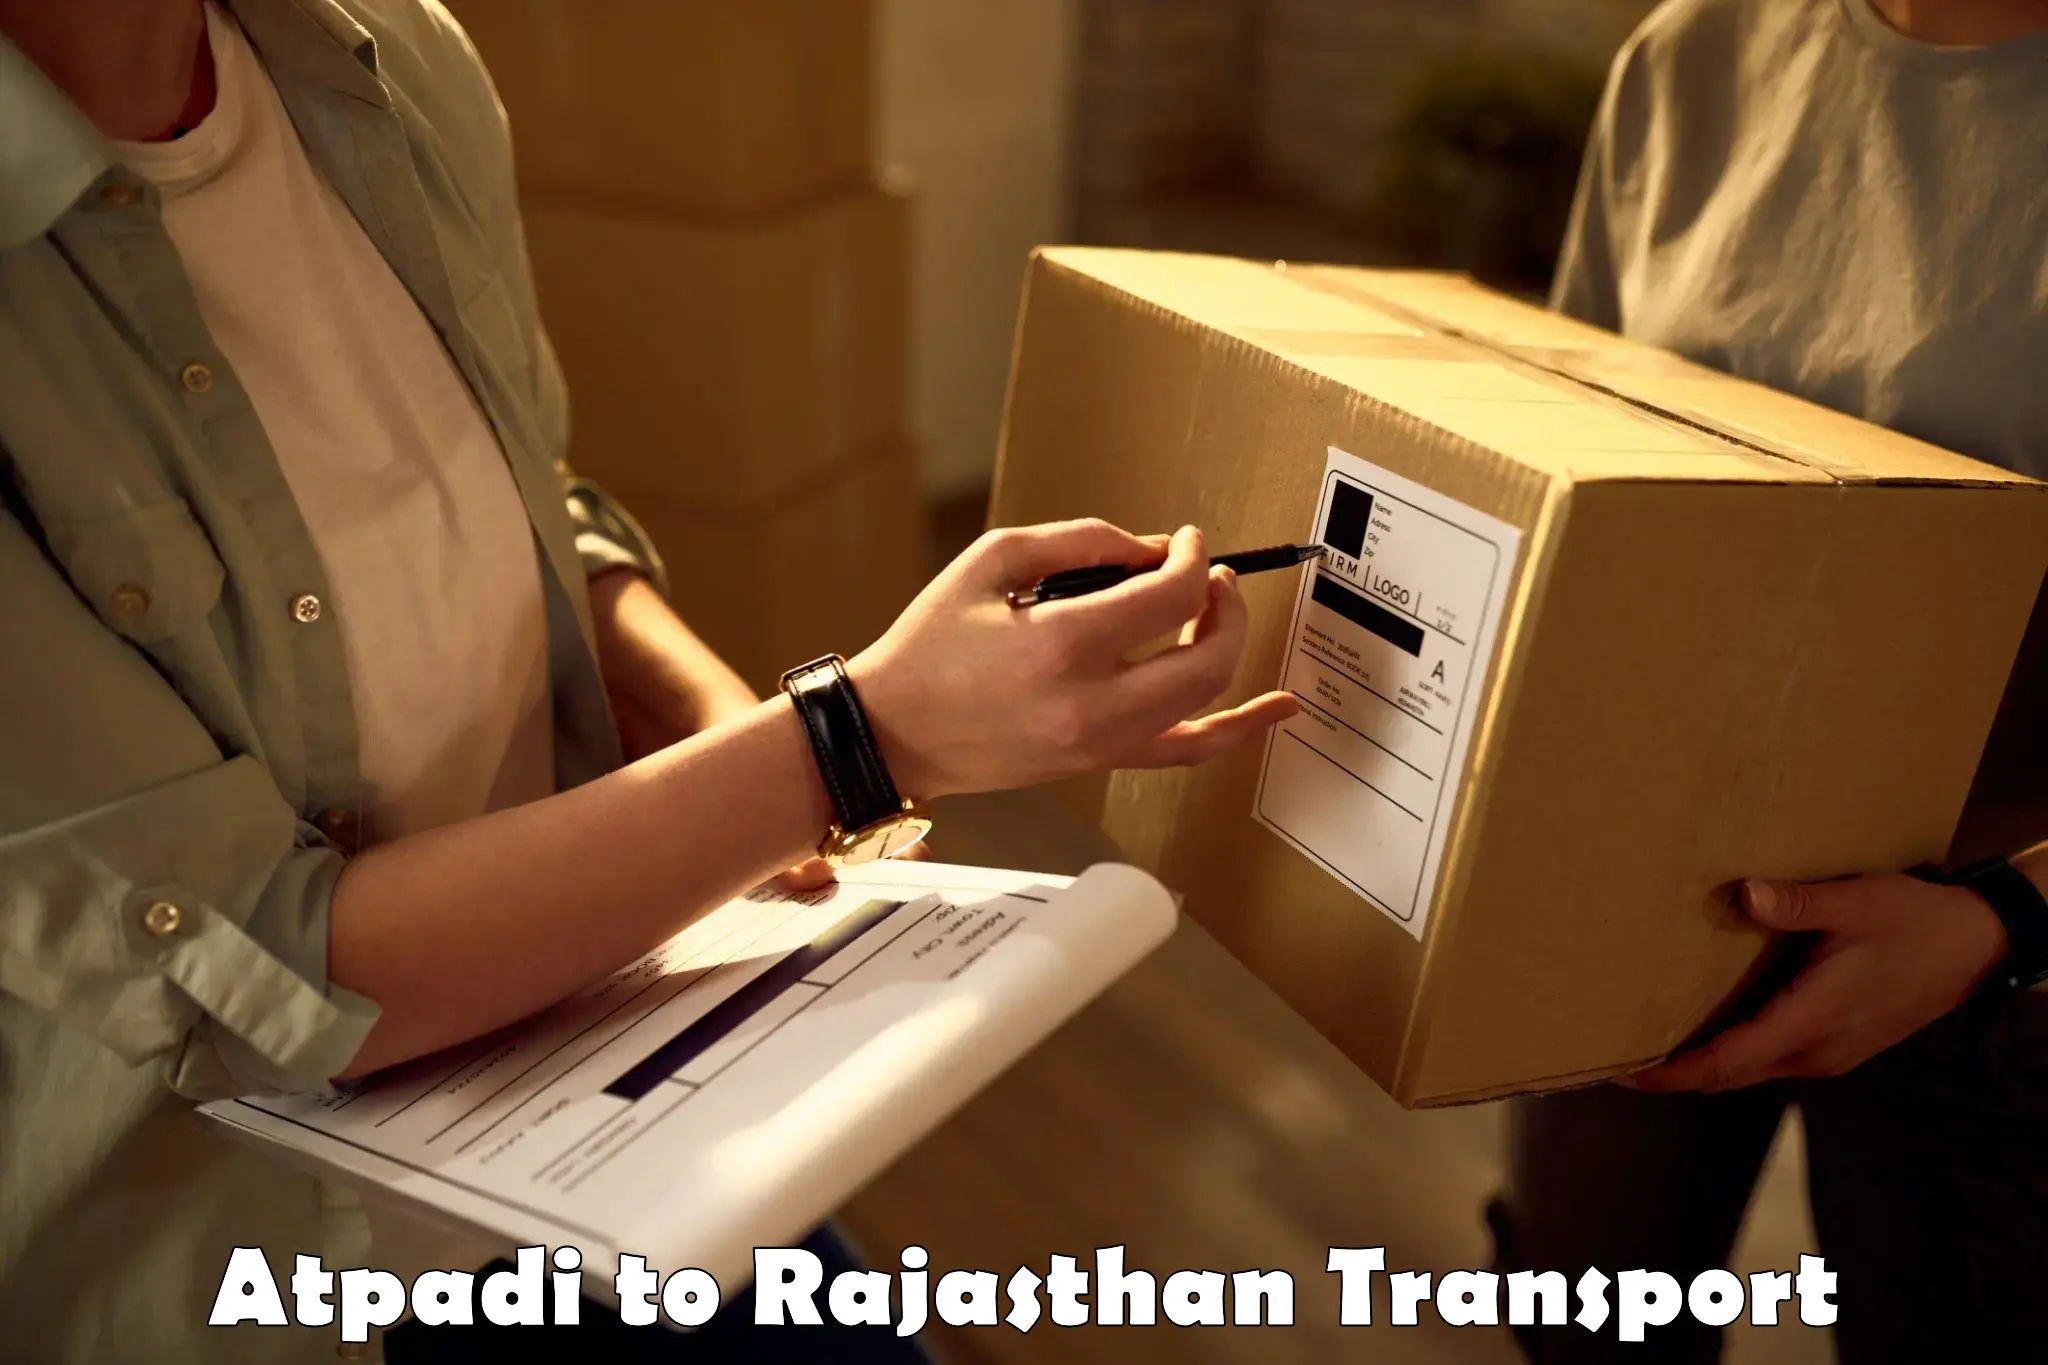 Transport in sharing in Atpadi to Rajasthan